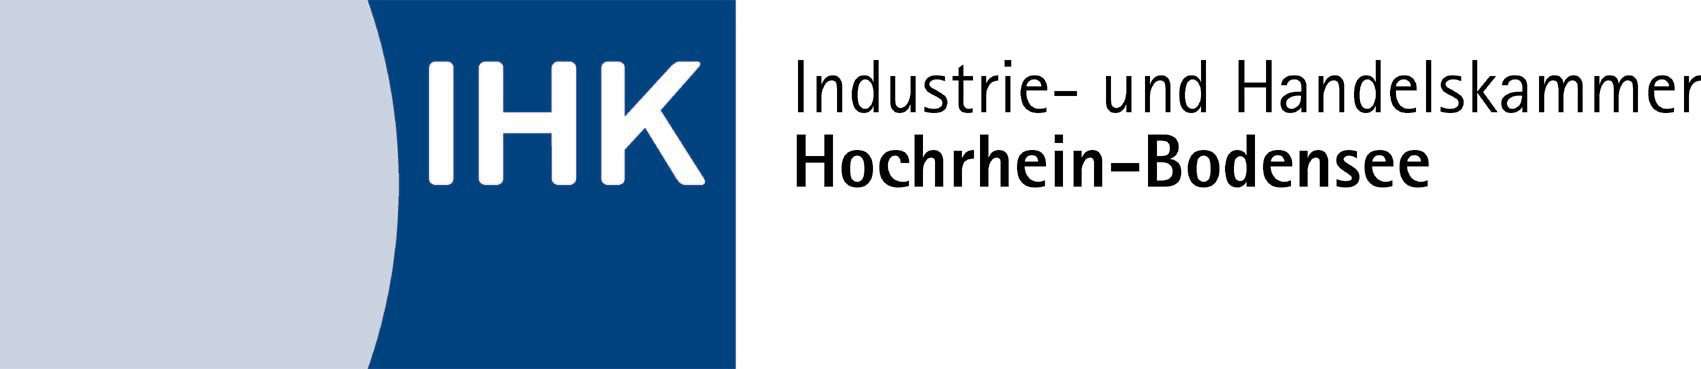 Industrie- und Handelskammer Hochrhein-Bodensee